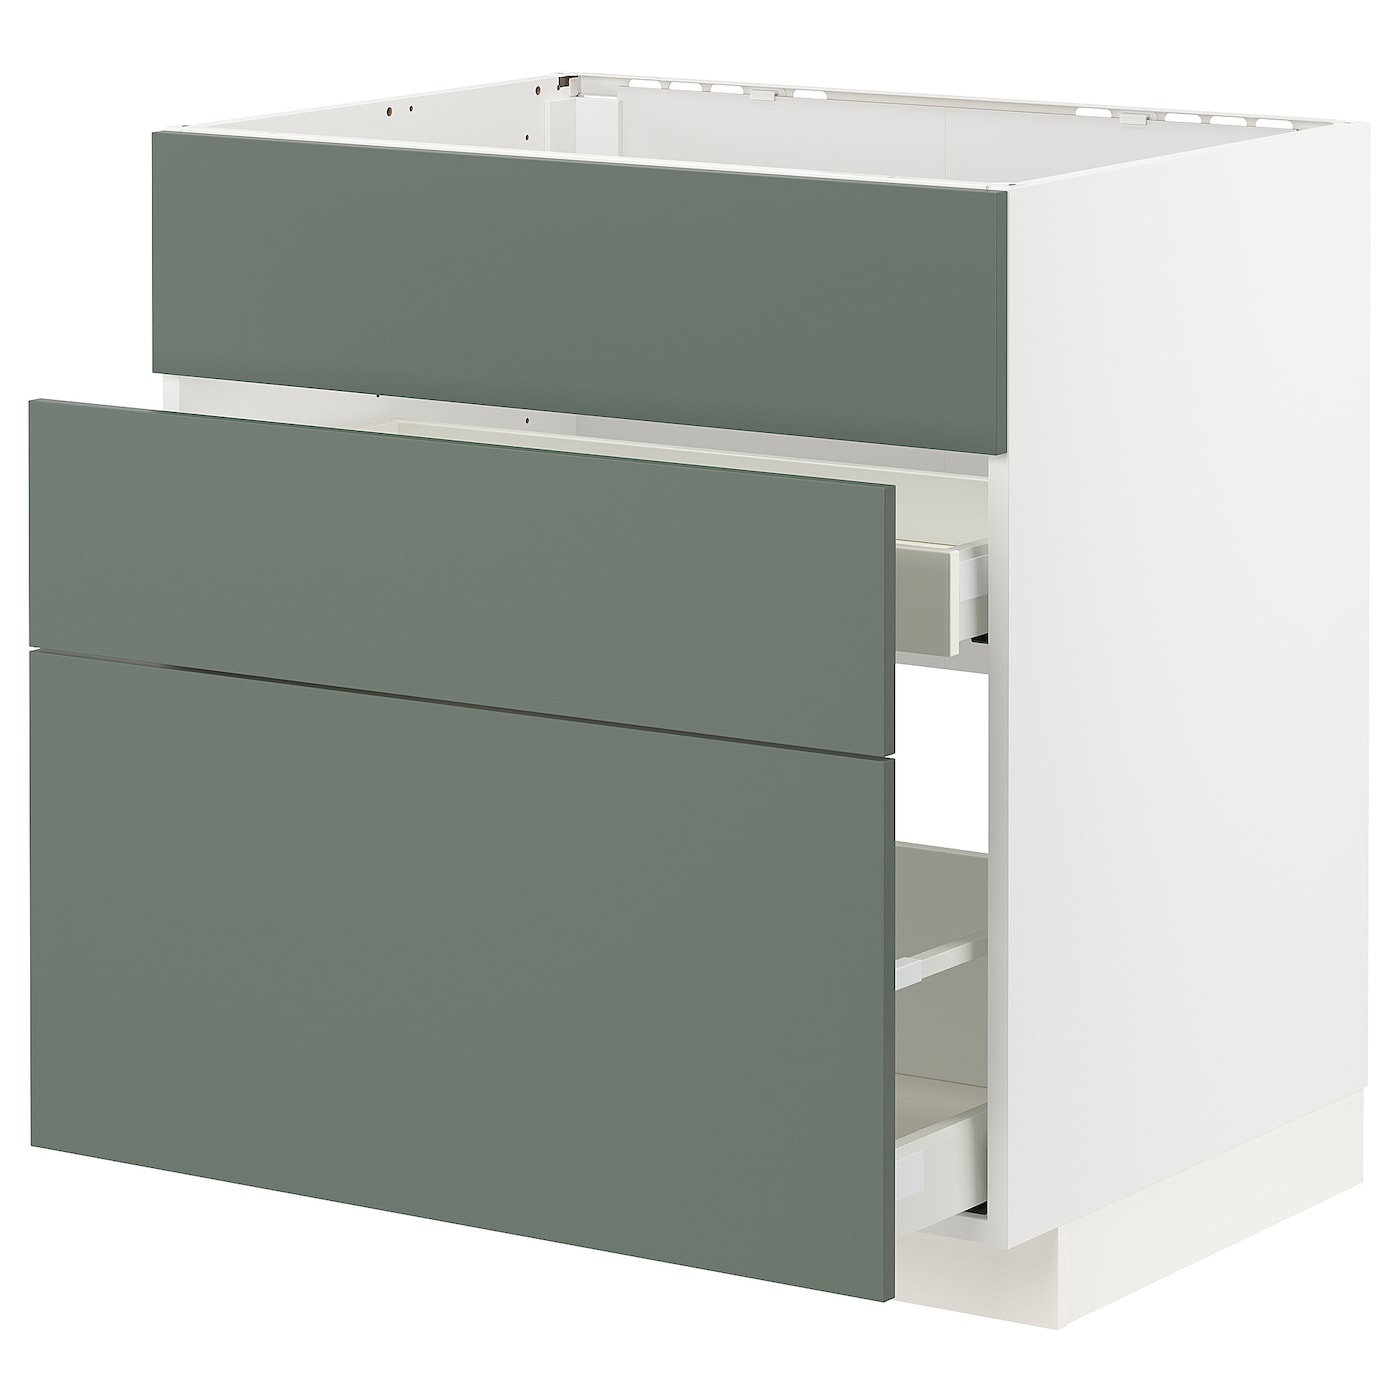 Напольный кухонный шкаф  - IKEA METOD MAXIMERA, 88x62x80см, белый/серо-зеленый, МЕТОД МАКСИМЕРА ИКЕА